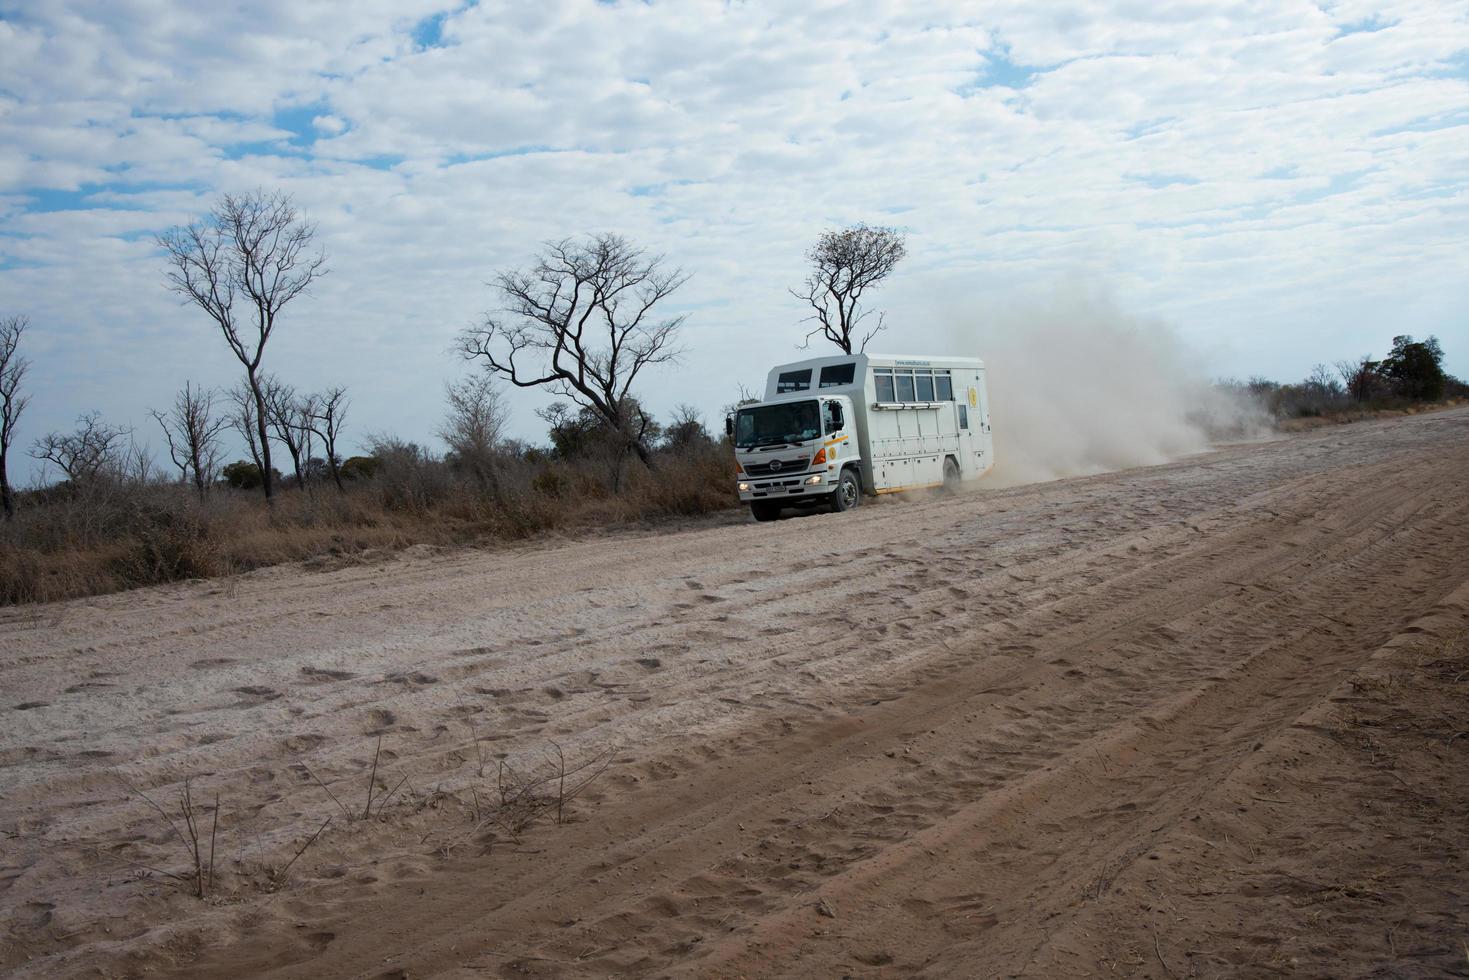 Kalahari-woestijn, Namibië, 2016, een vrachtwagen voor toeristen die op een zandweg in Namibië rijden. stof achter de baan, geen voertuigen meer. Namibië. foto